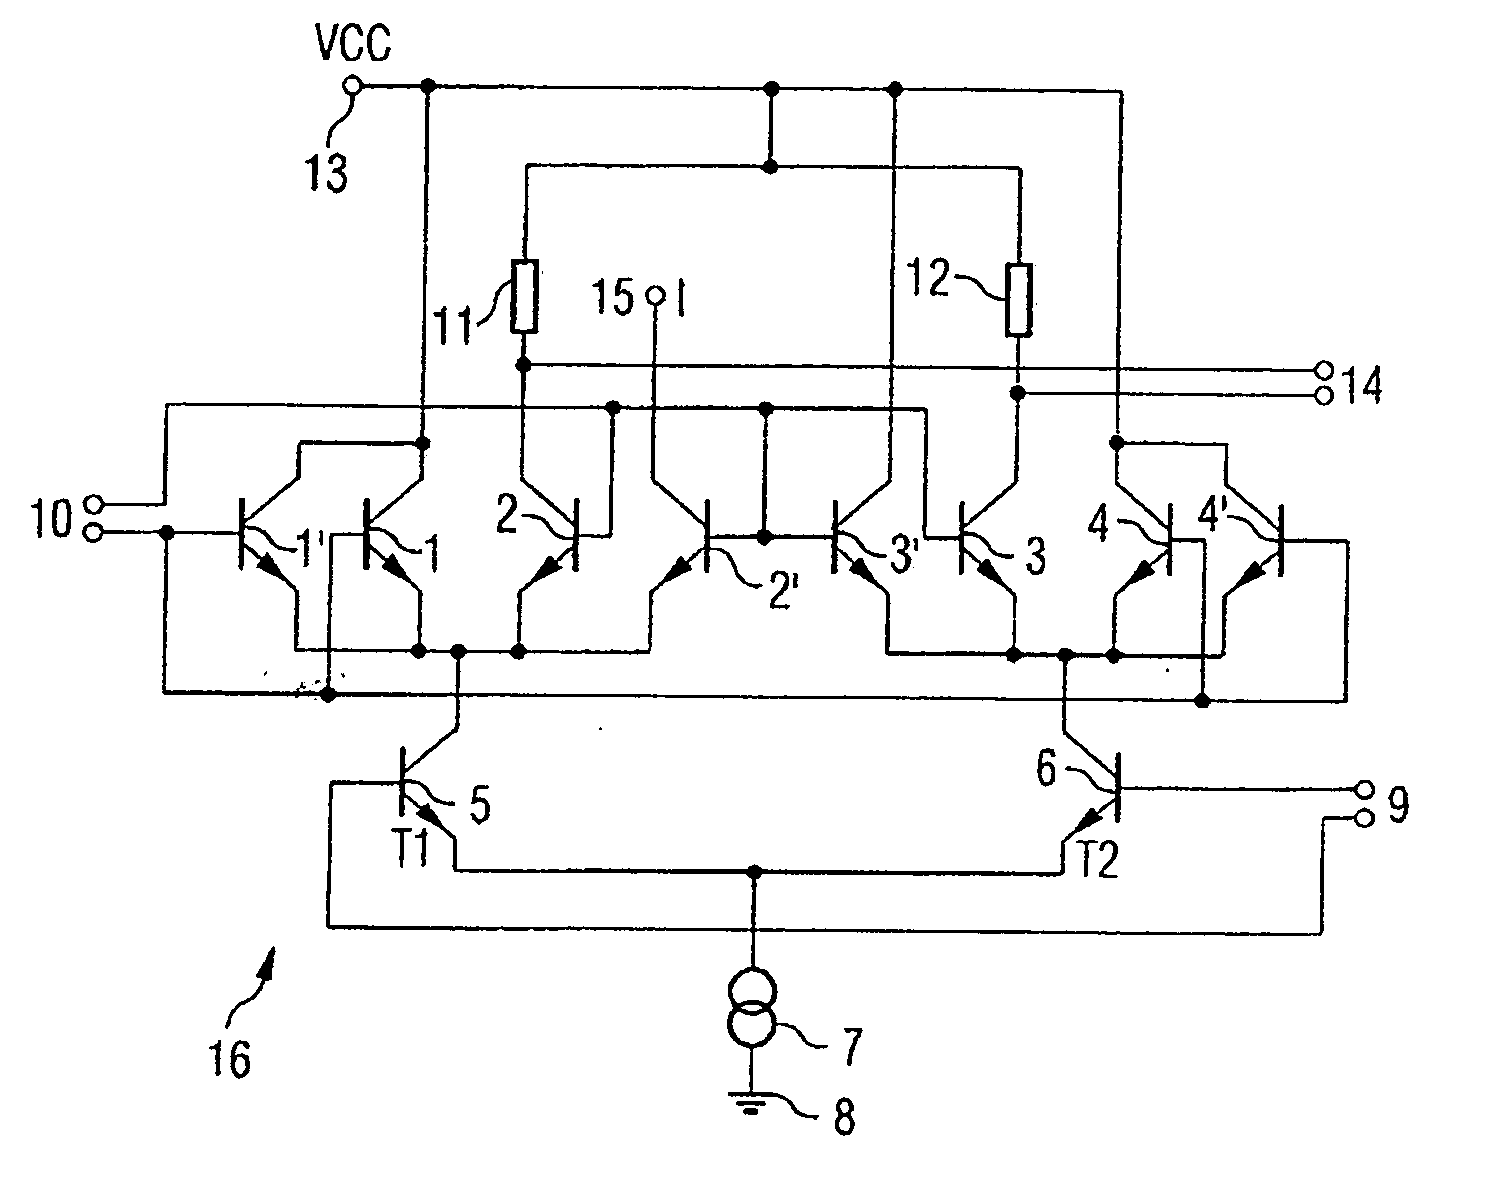 Amplifier arrangement and control loop having the amplifier arrangement